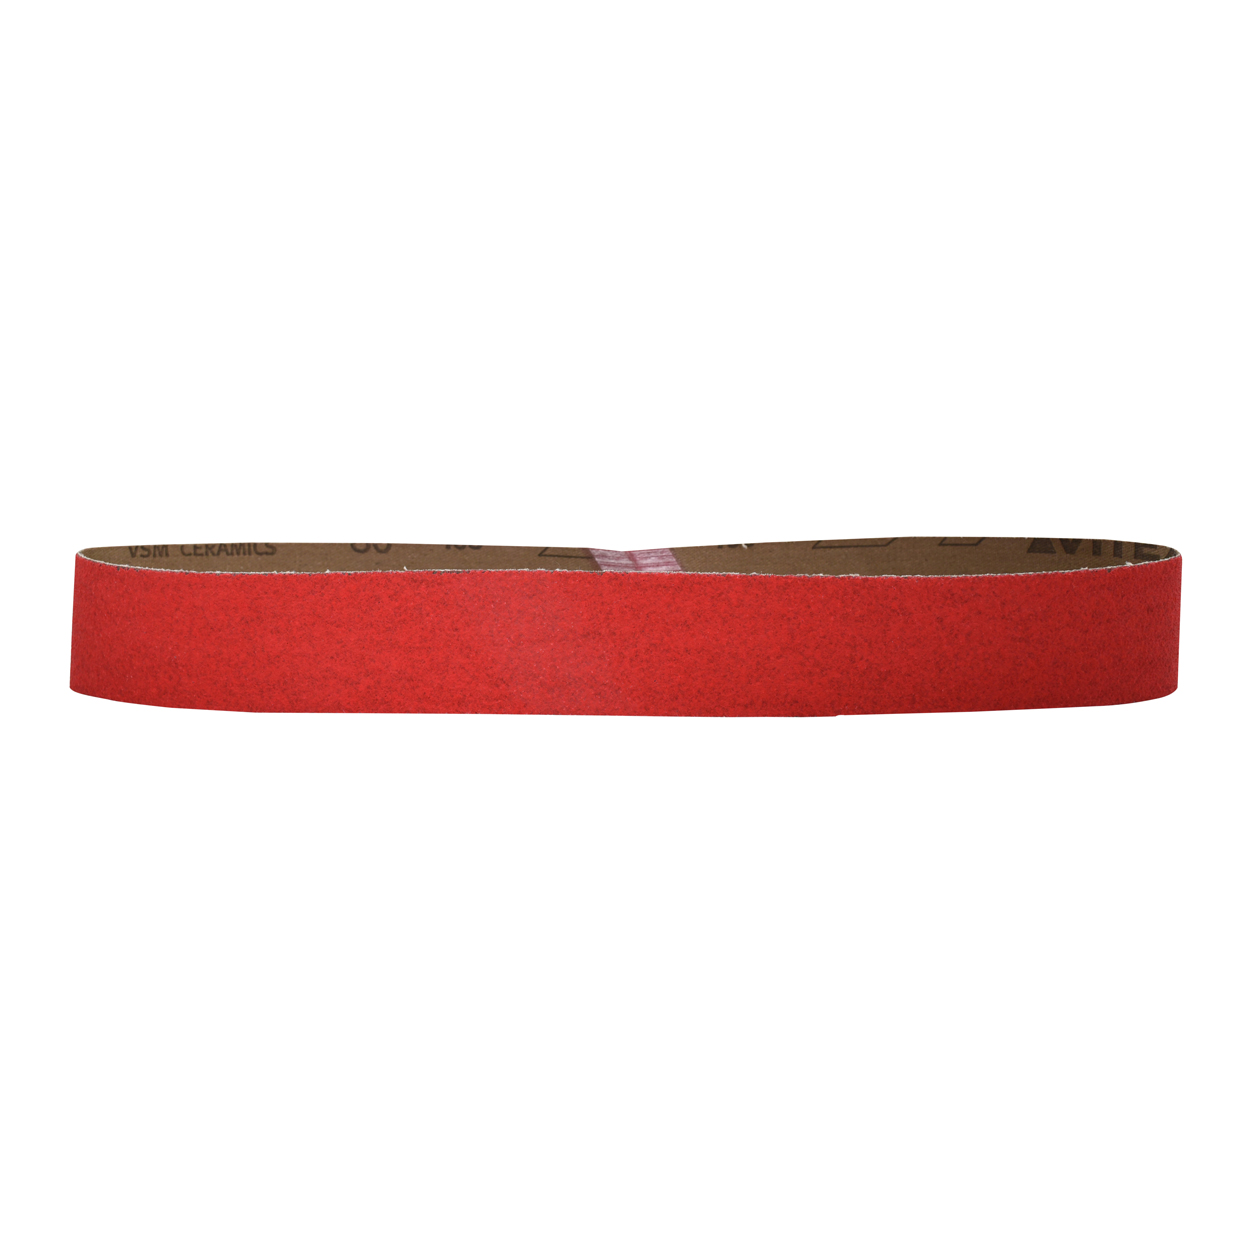 Sanding belt -Schleiferl Schleifband: Premium Schleifband